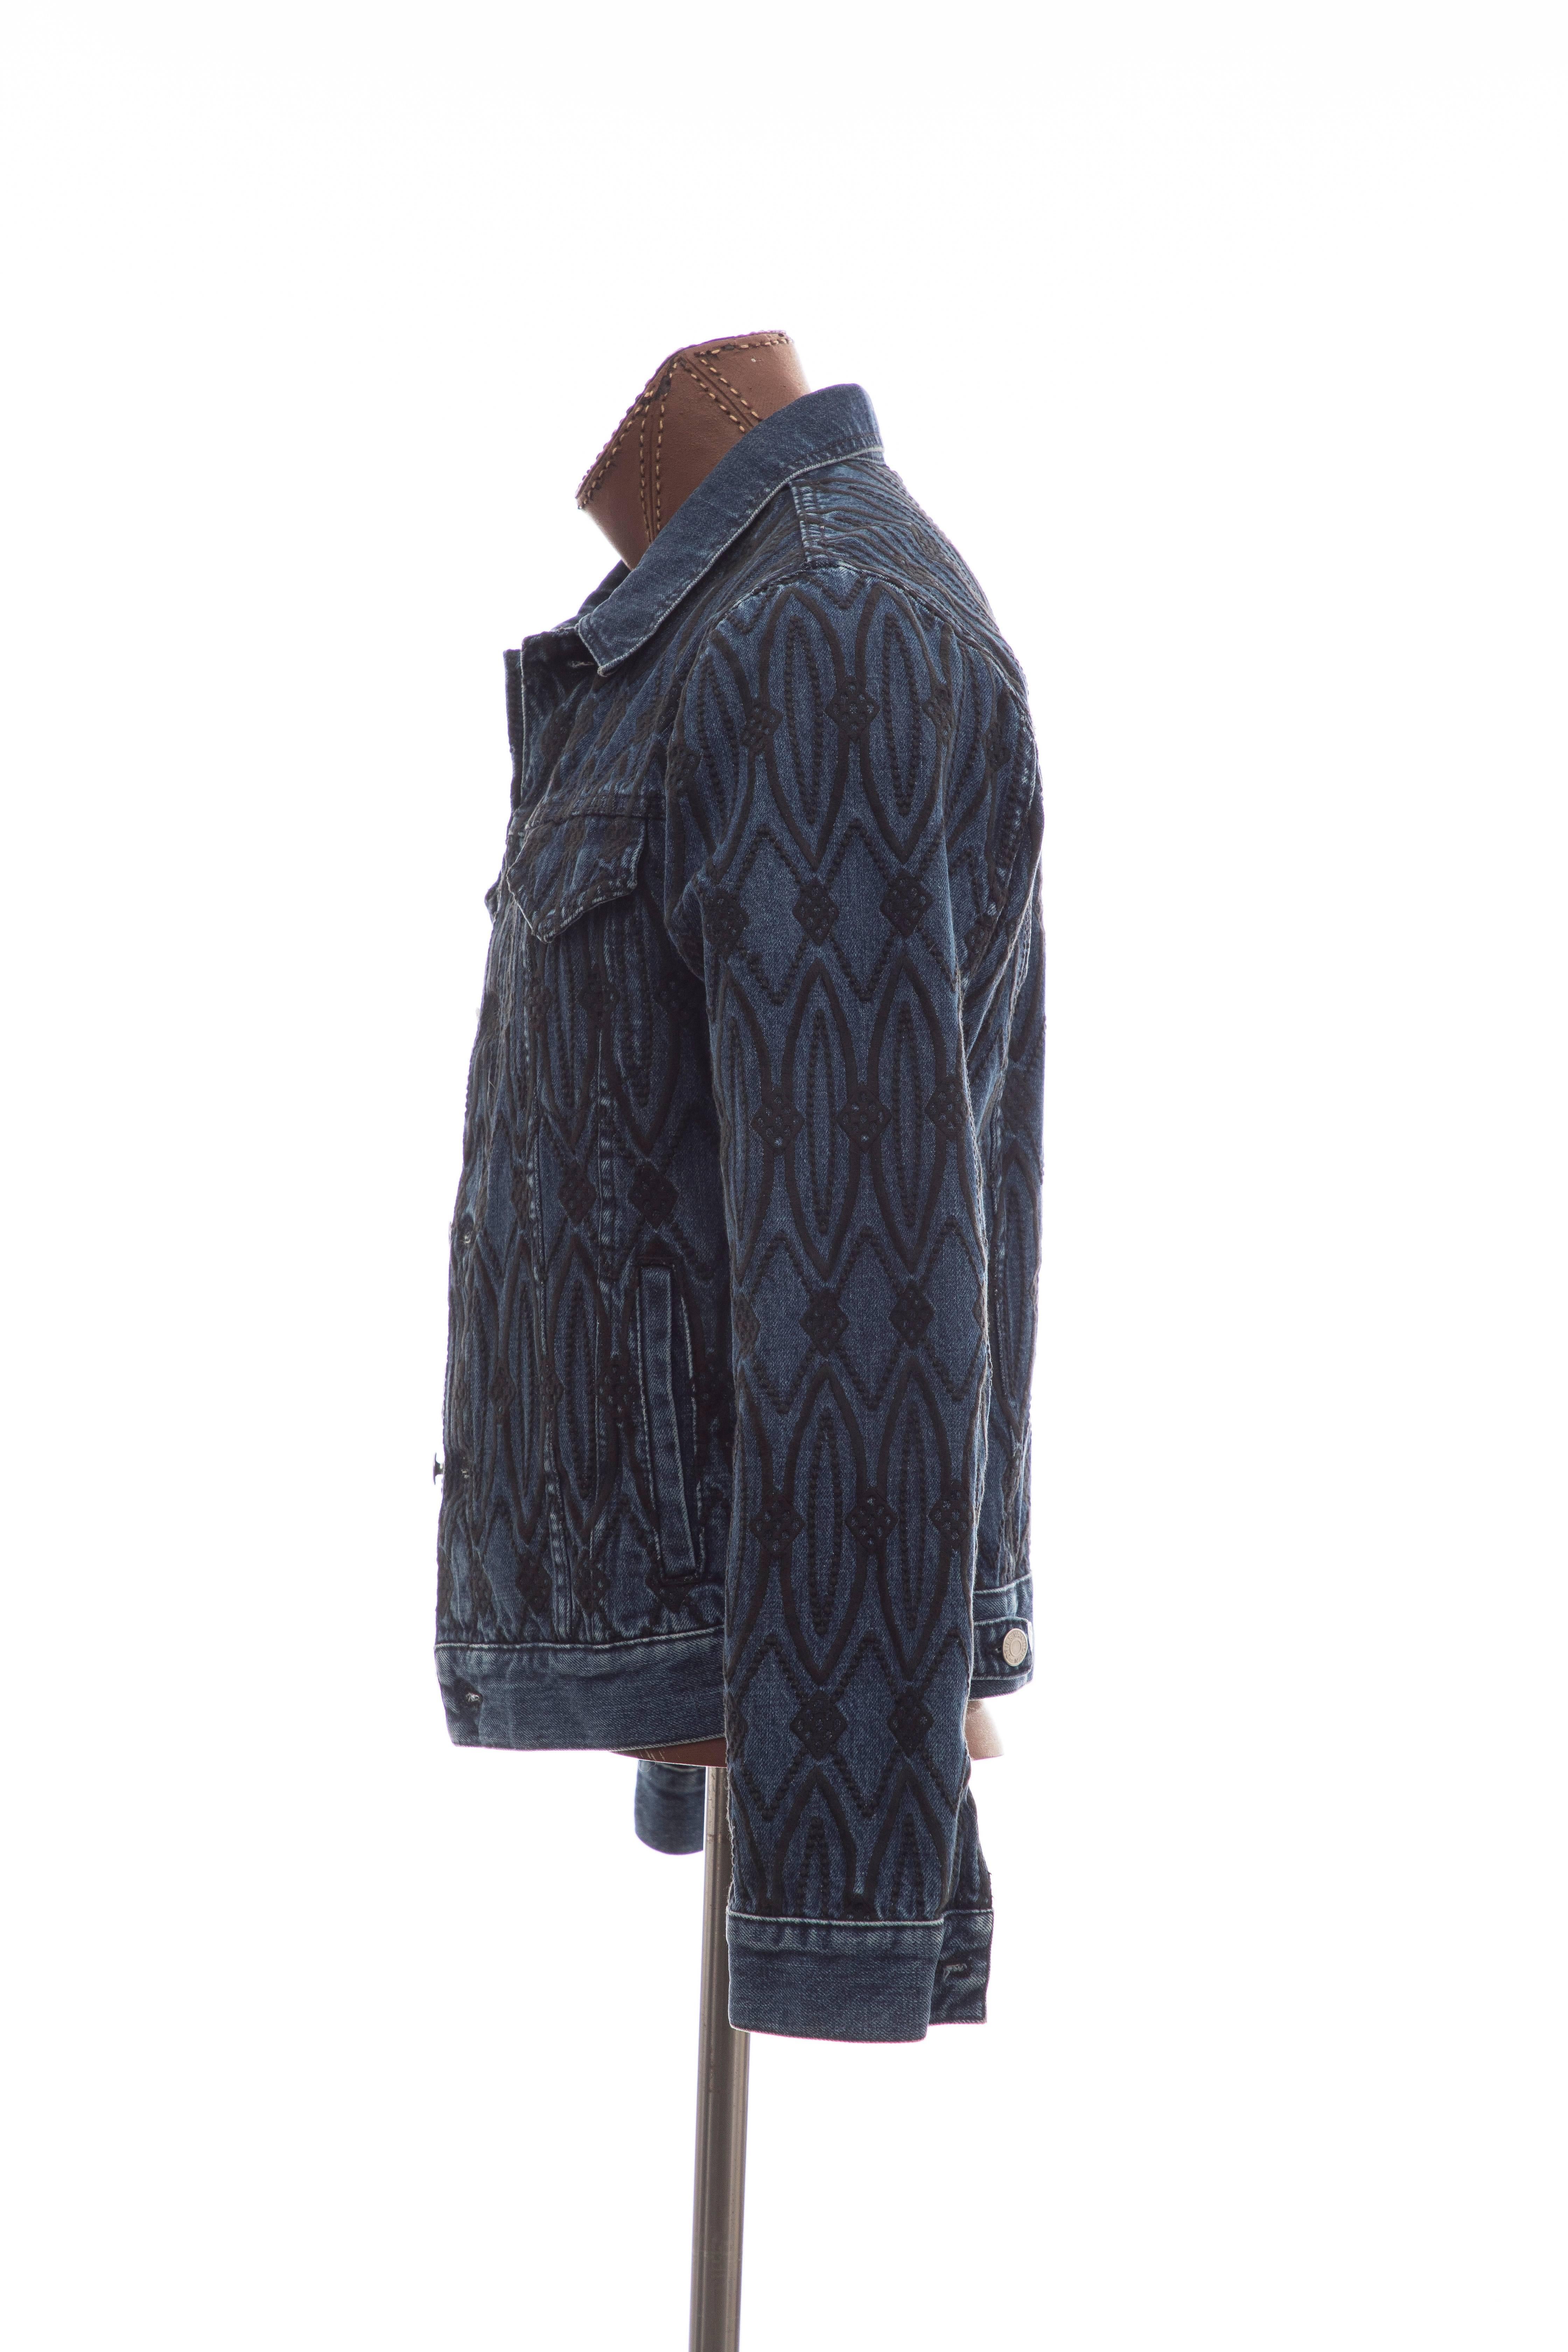 Dries Van Noten Men's Embroidered Denim Jacket, Fall 2013 In Excellent Condition For Sale In Cincinnati, OH